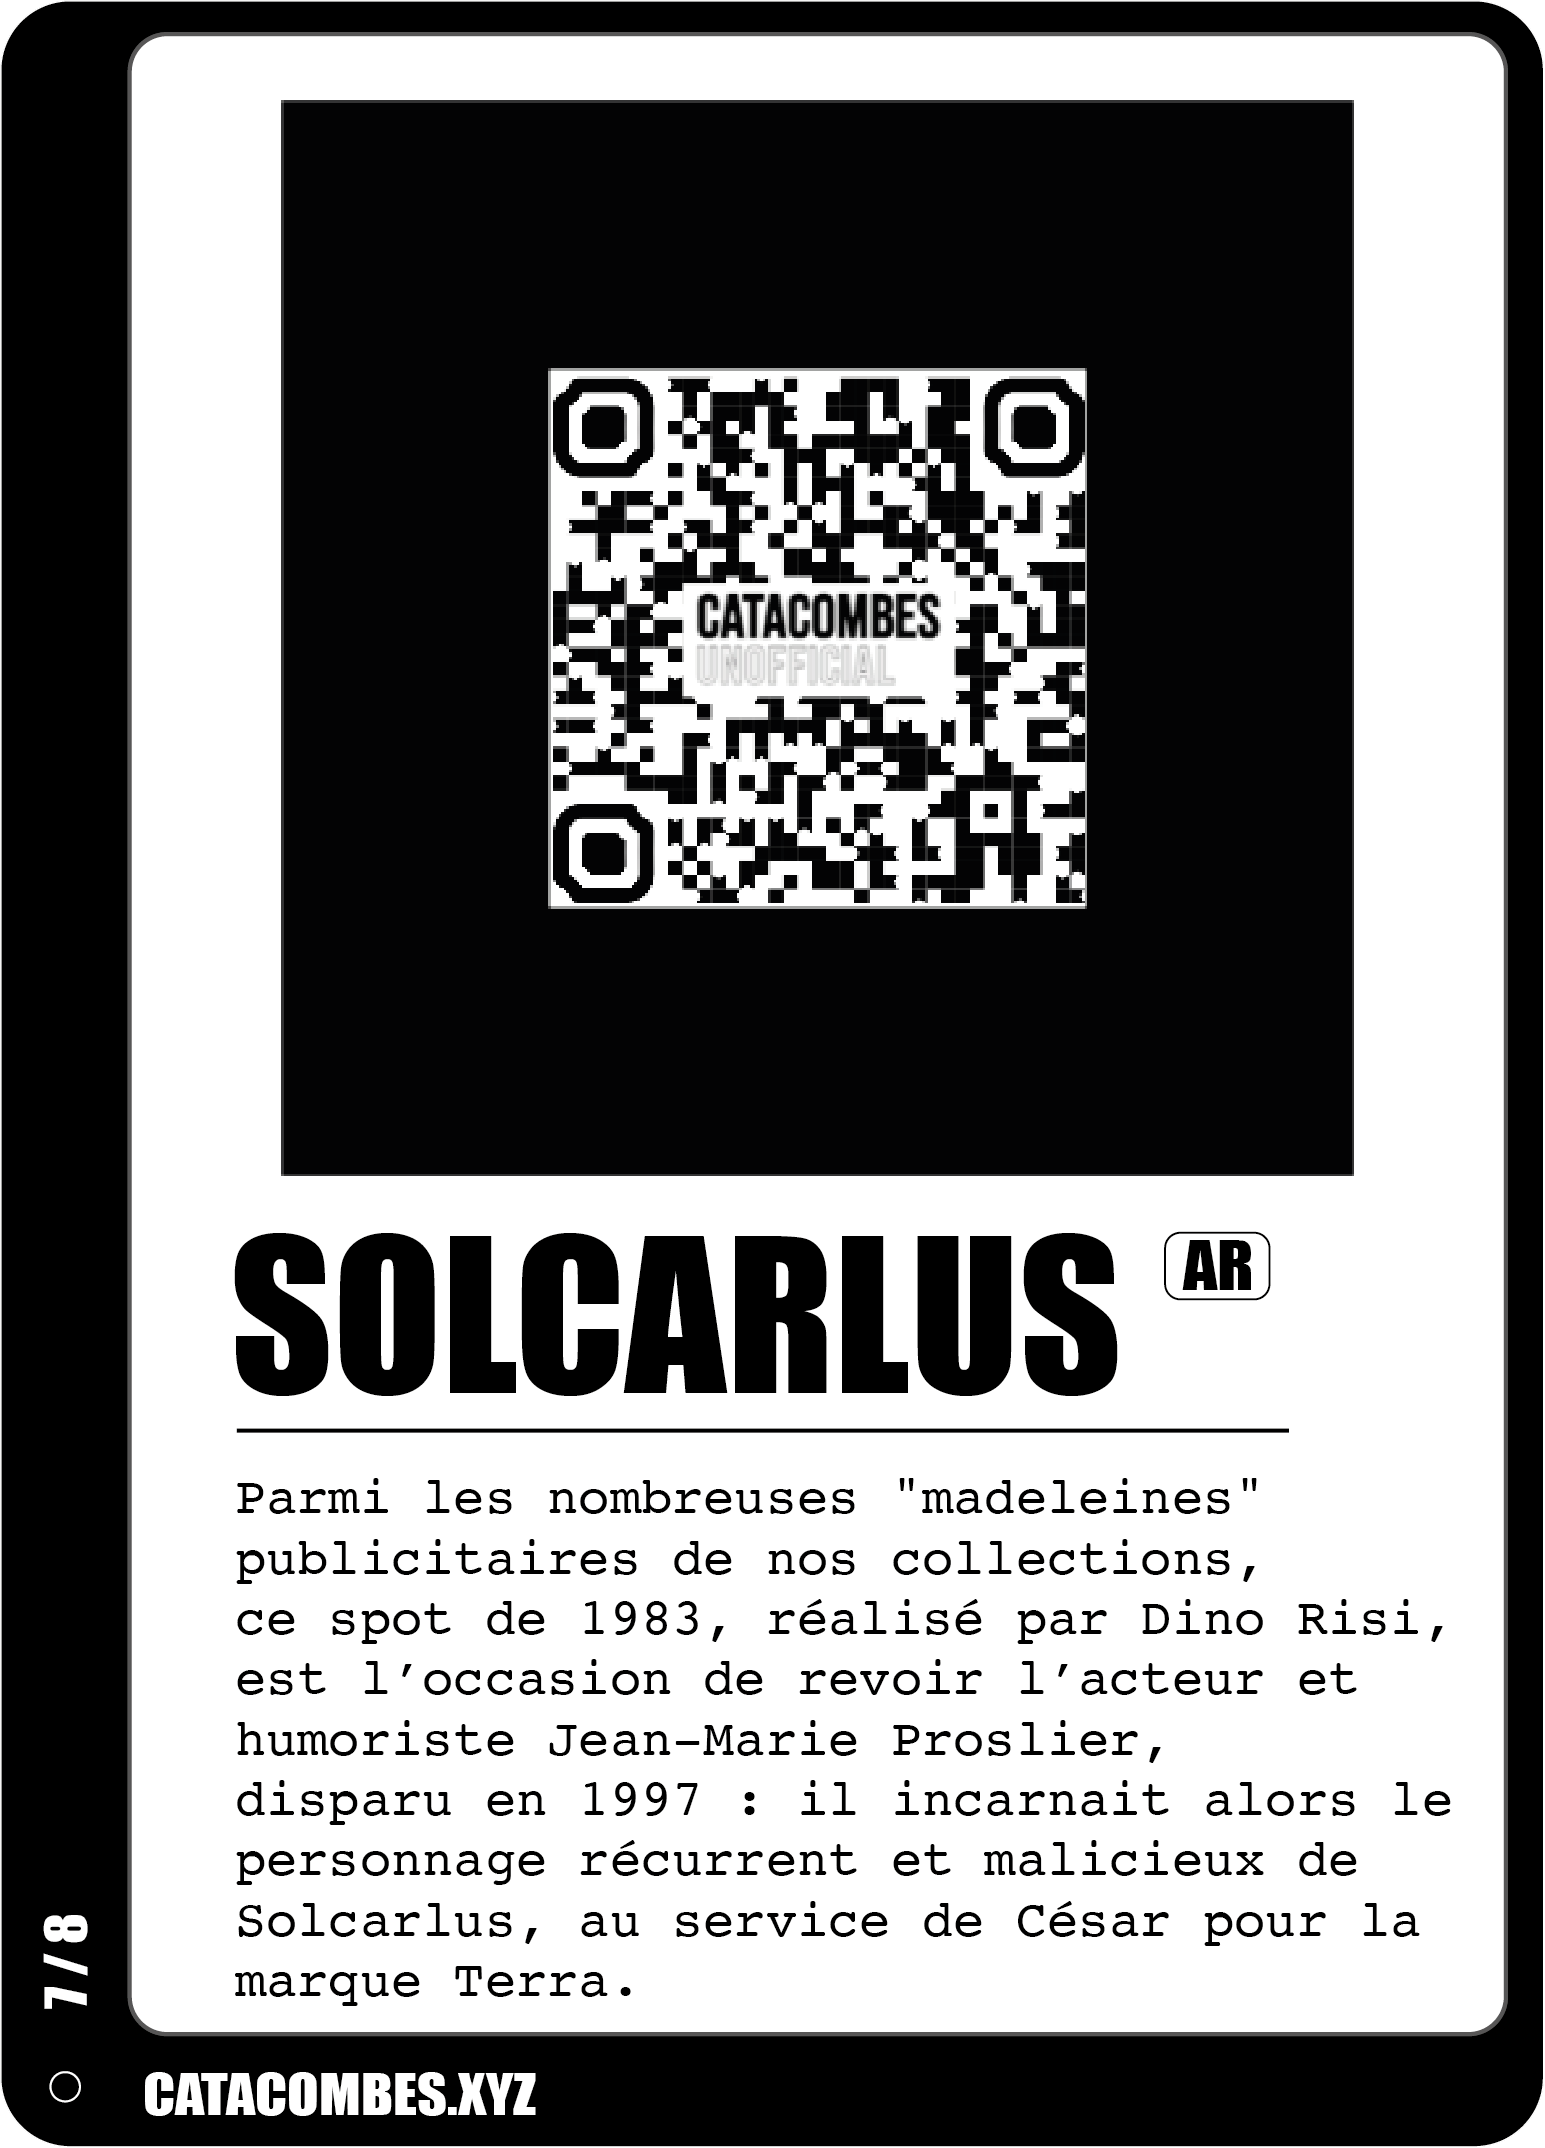 QR code permettant de faire apparaitre la salle Solcarlus en AR ainsi que des informations